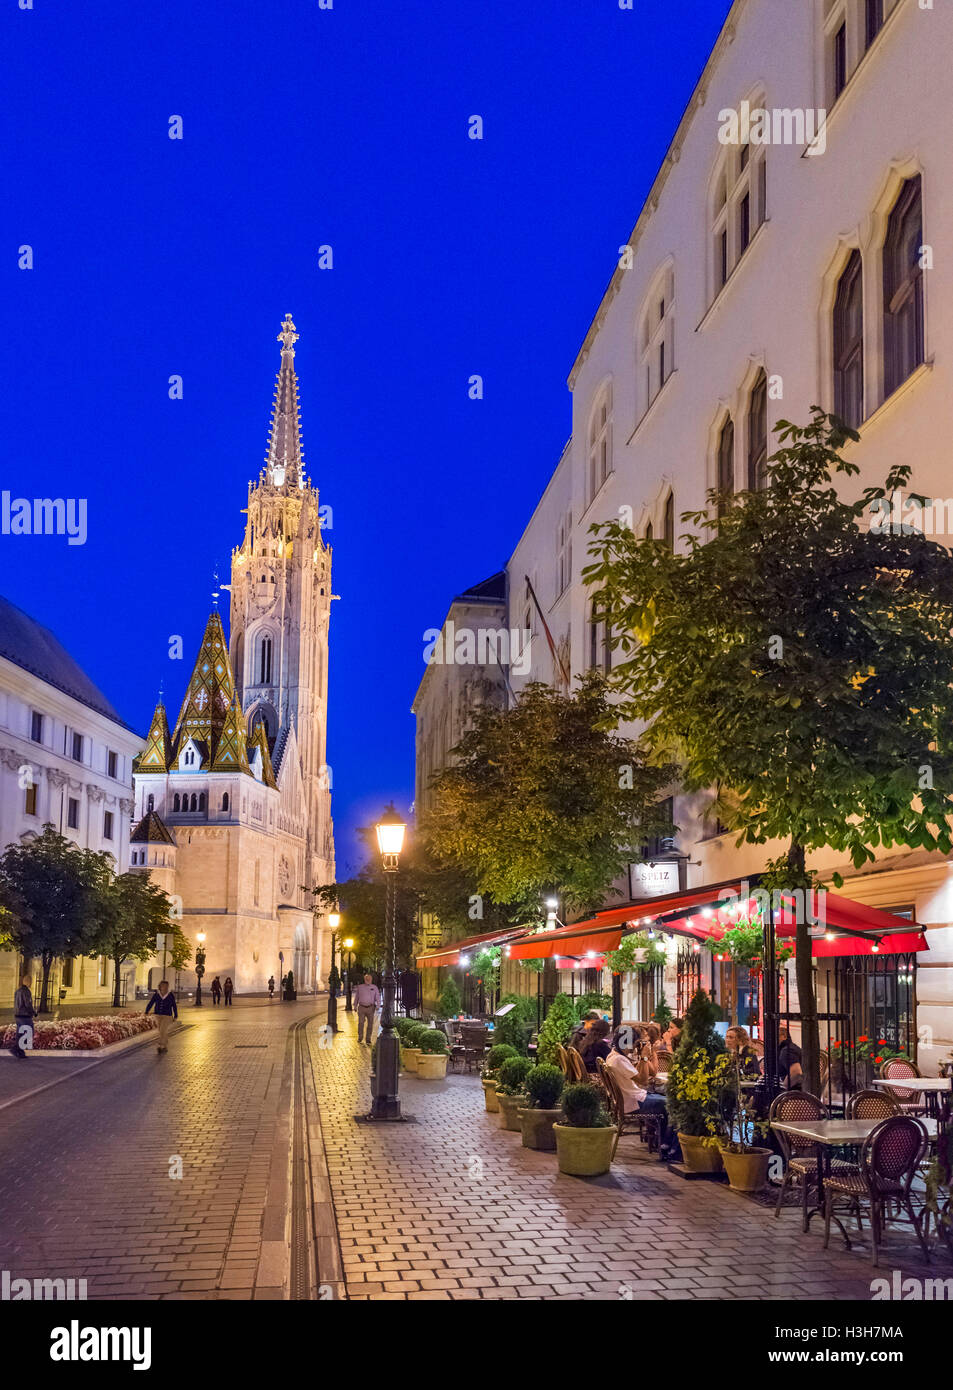 Restaurante en el Hess András tér en la noche, mirando hacia la Iglesia de San Matías, el distrito del Castillo de Buda, la Colina del Castillo, Budapest, Hungría Foto de stock